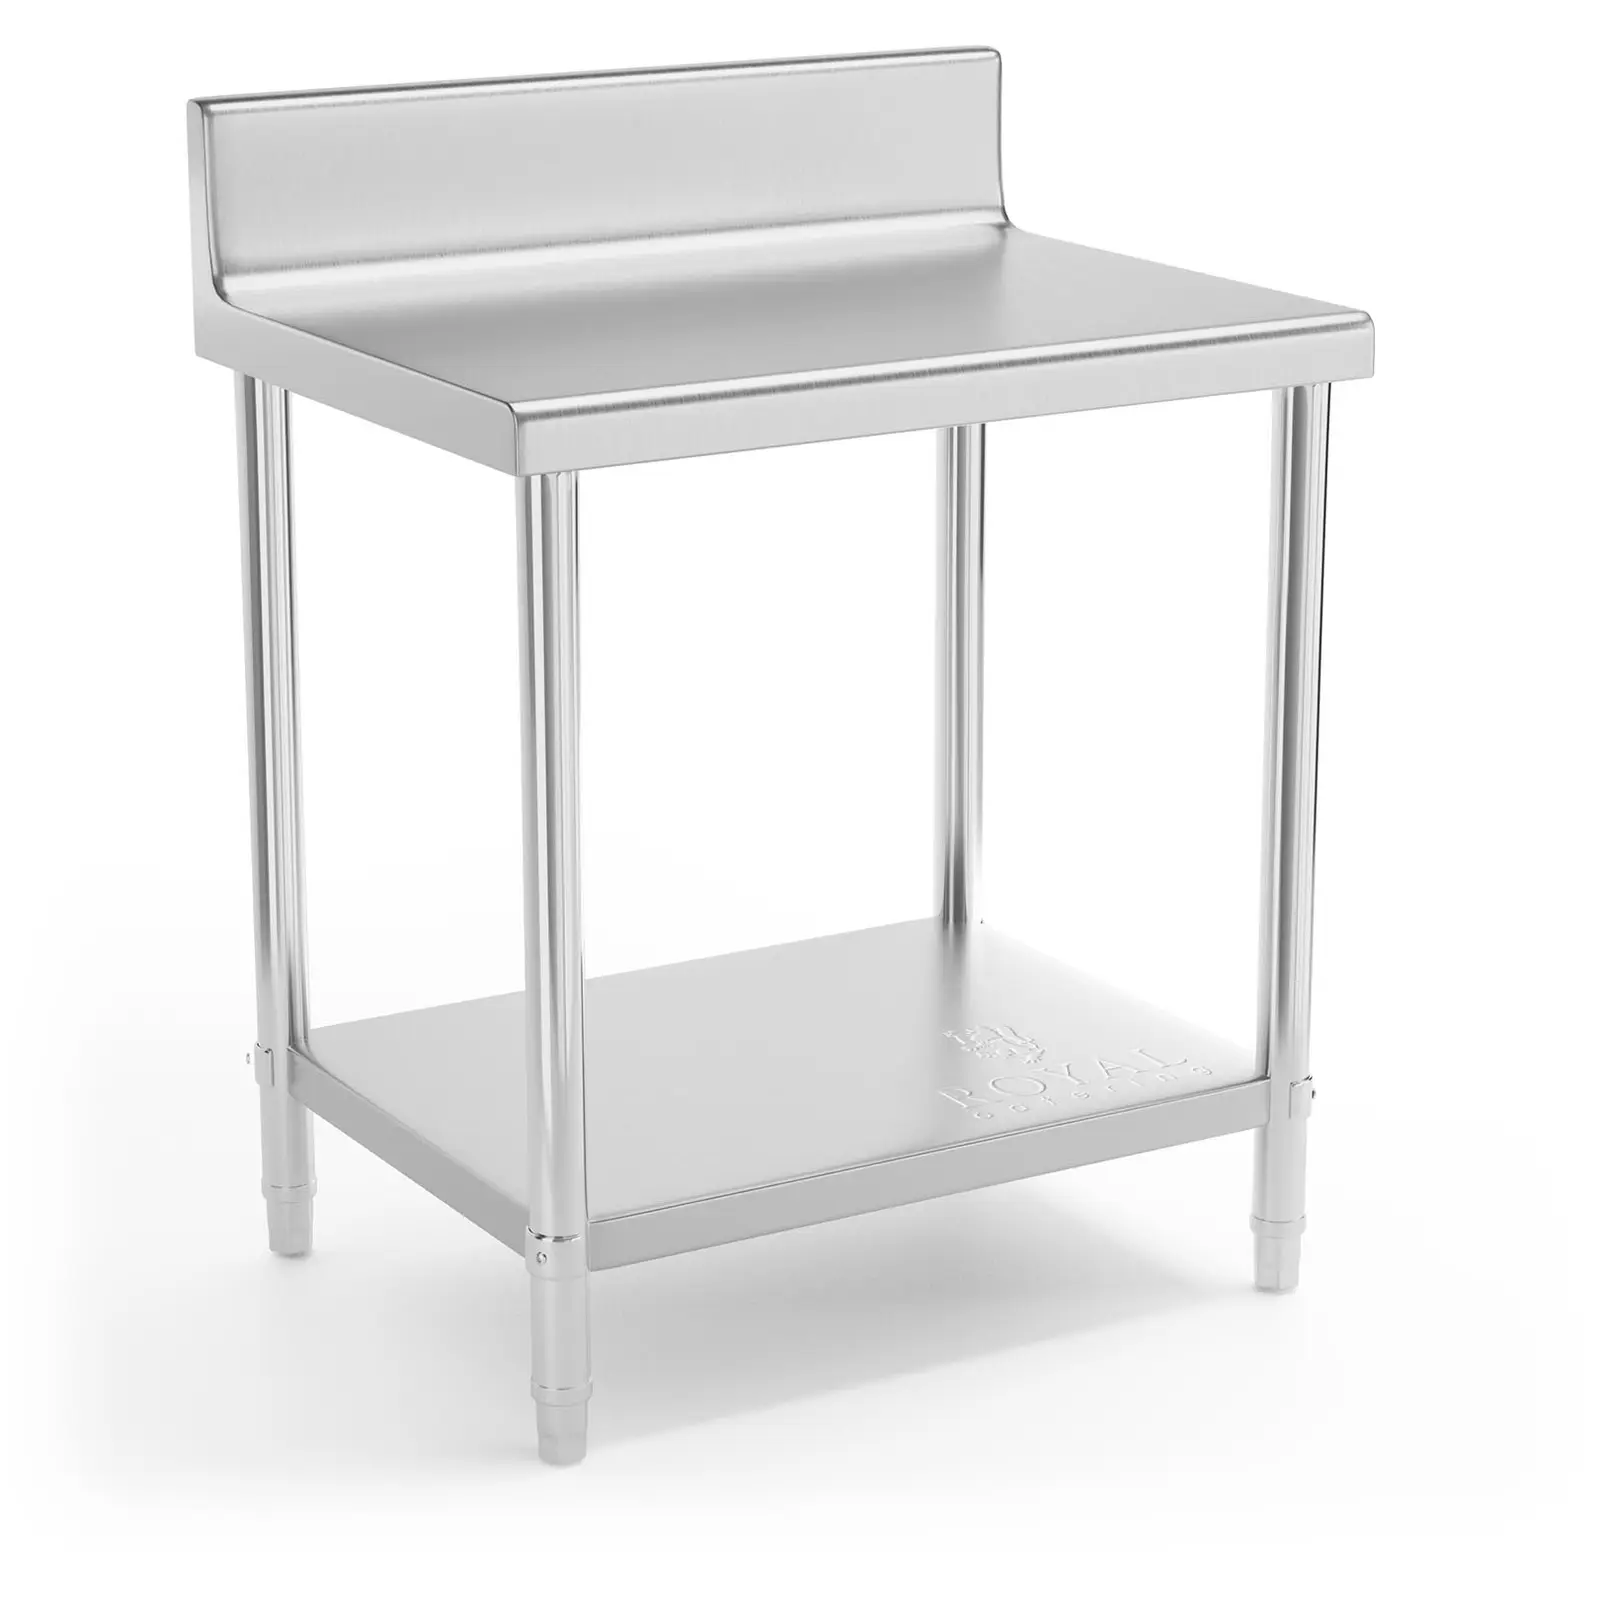 Rozsdamentes acél asztal - 80 x 60 cm - karimával- 190 kg terhelhetőség